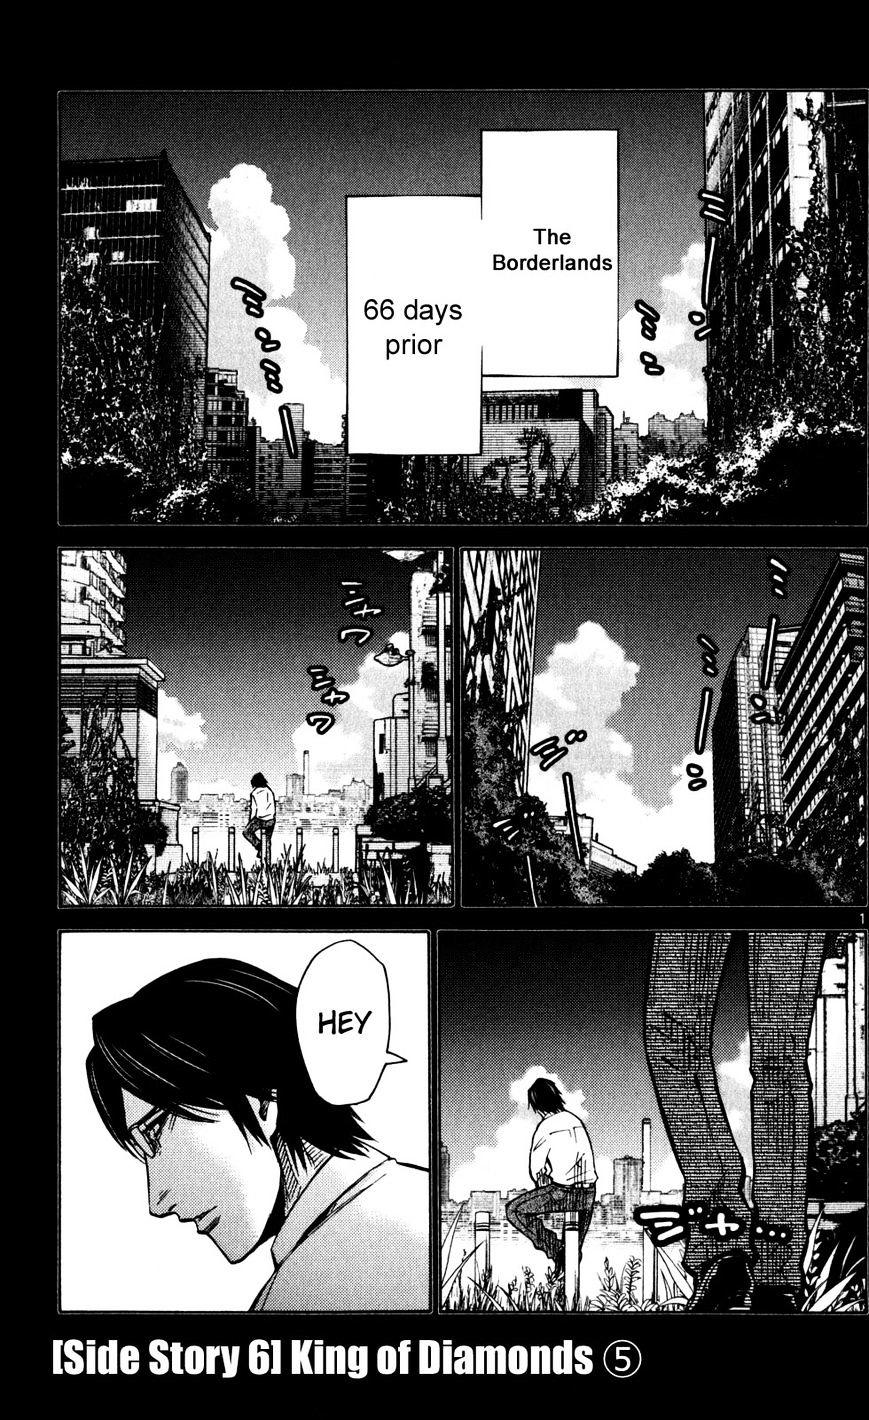 Imawa No Kuni No Alice Chapter 51.5 : Side Story 6 - King Of Diamonds (5) page 1 - Mangakakalot